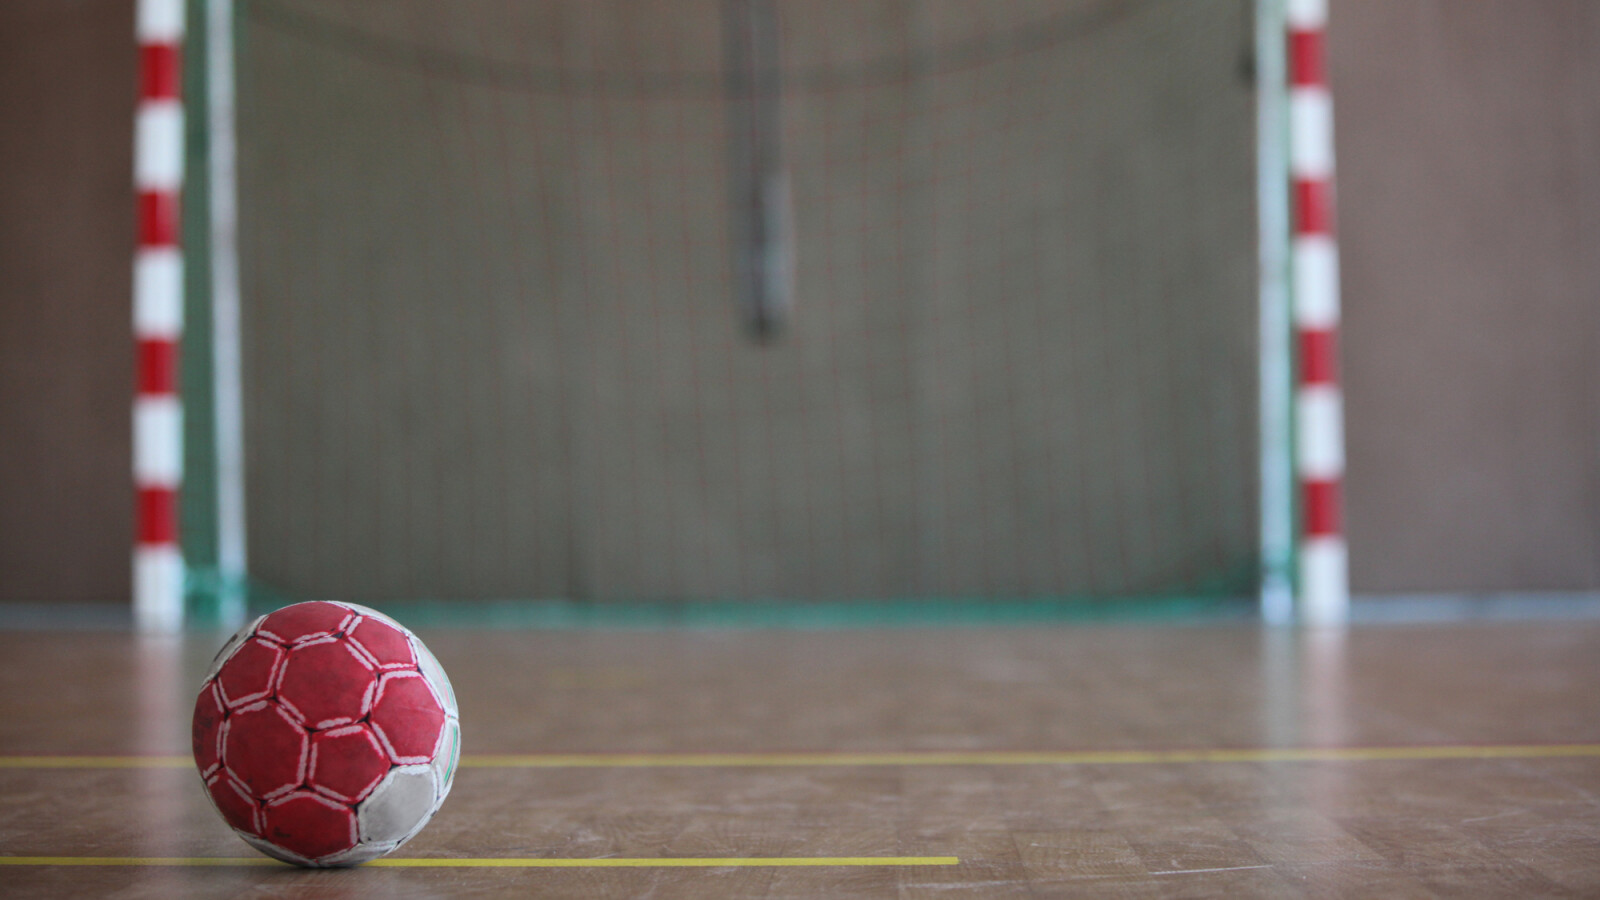 Sky verliert Handball-Rechte Neuer Anbieter will Abonnenten mit diesem Deal zum Wechsel überreden NETZWELT